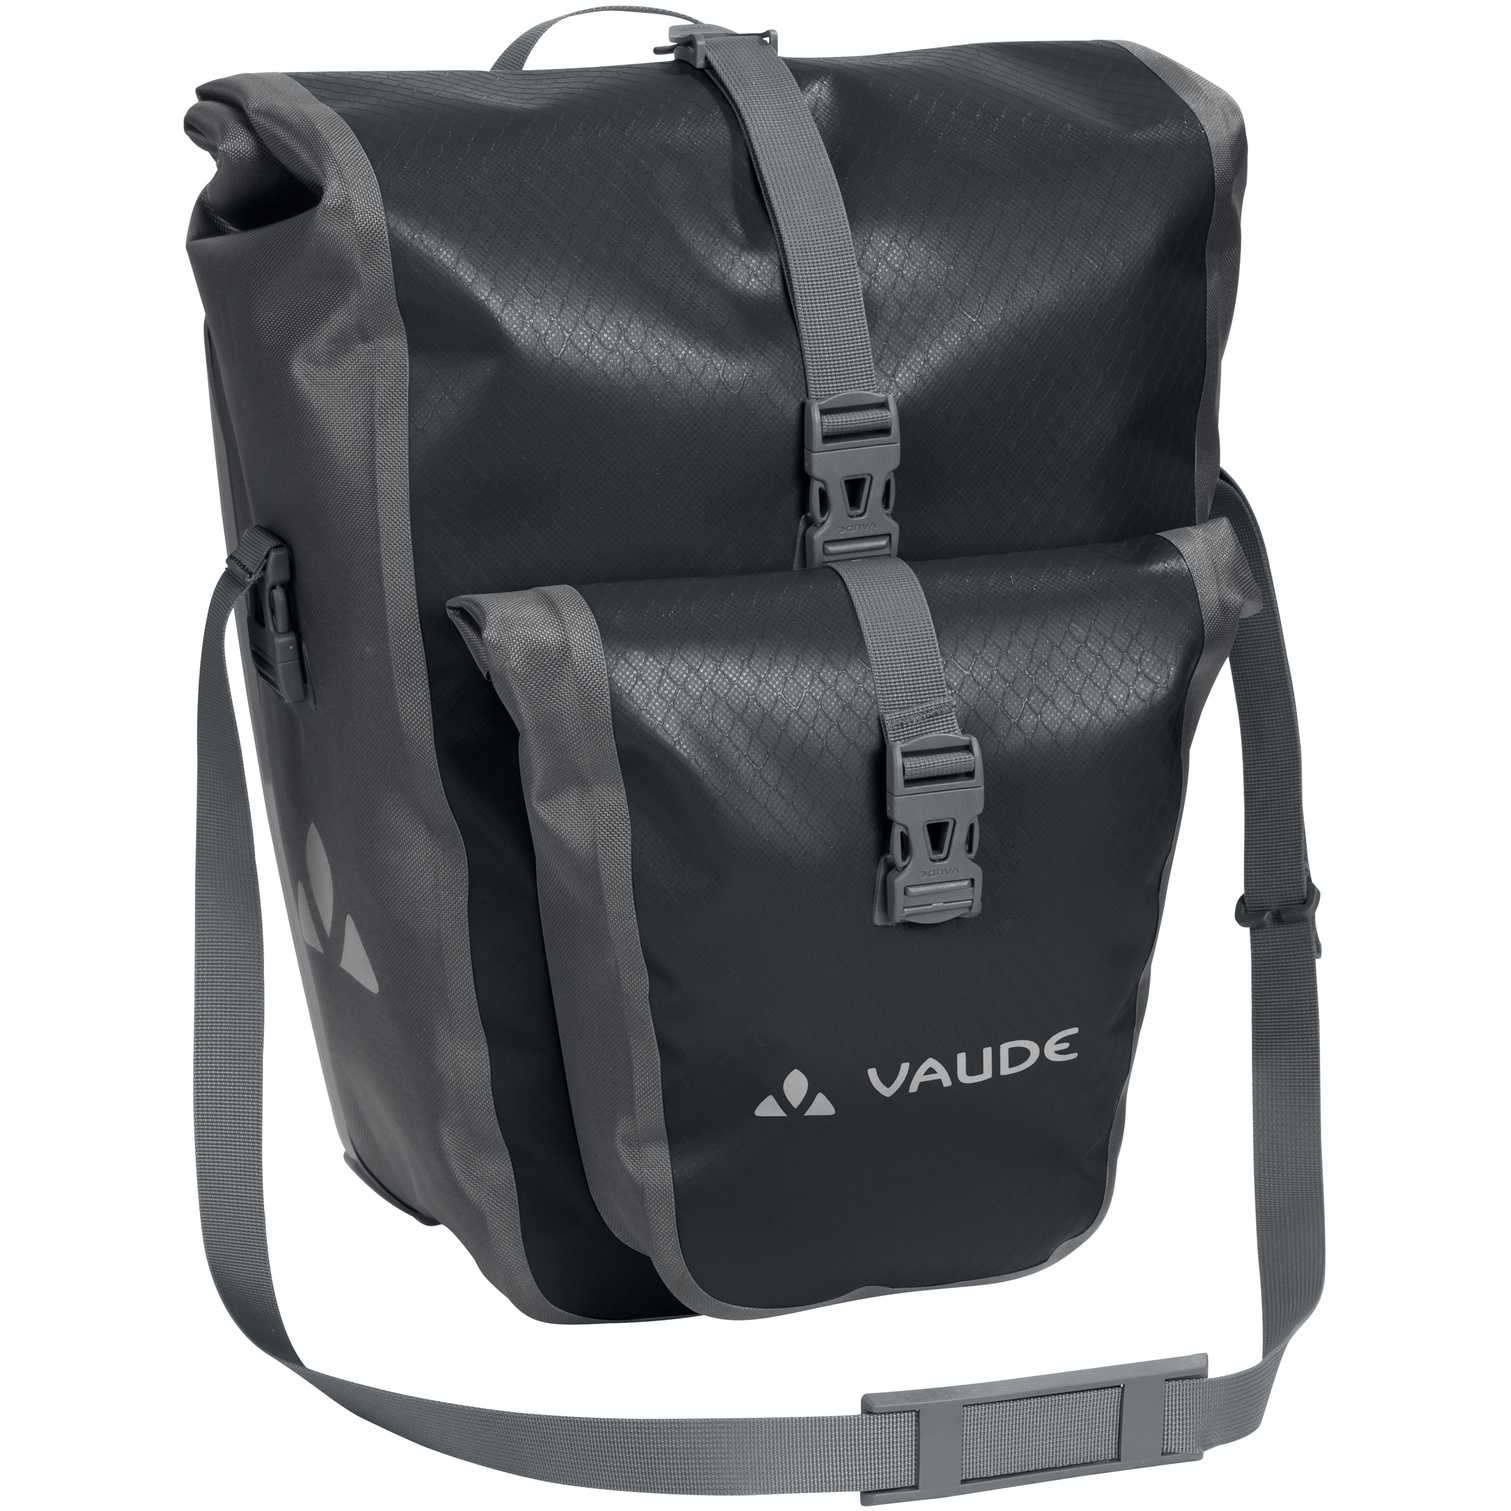 Produktbild von Vaude Aqua Back Plus Single Fahrradtasche 25.5L - schwarz